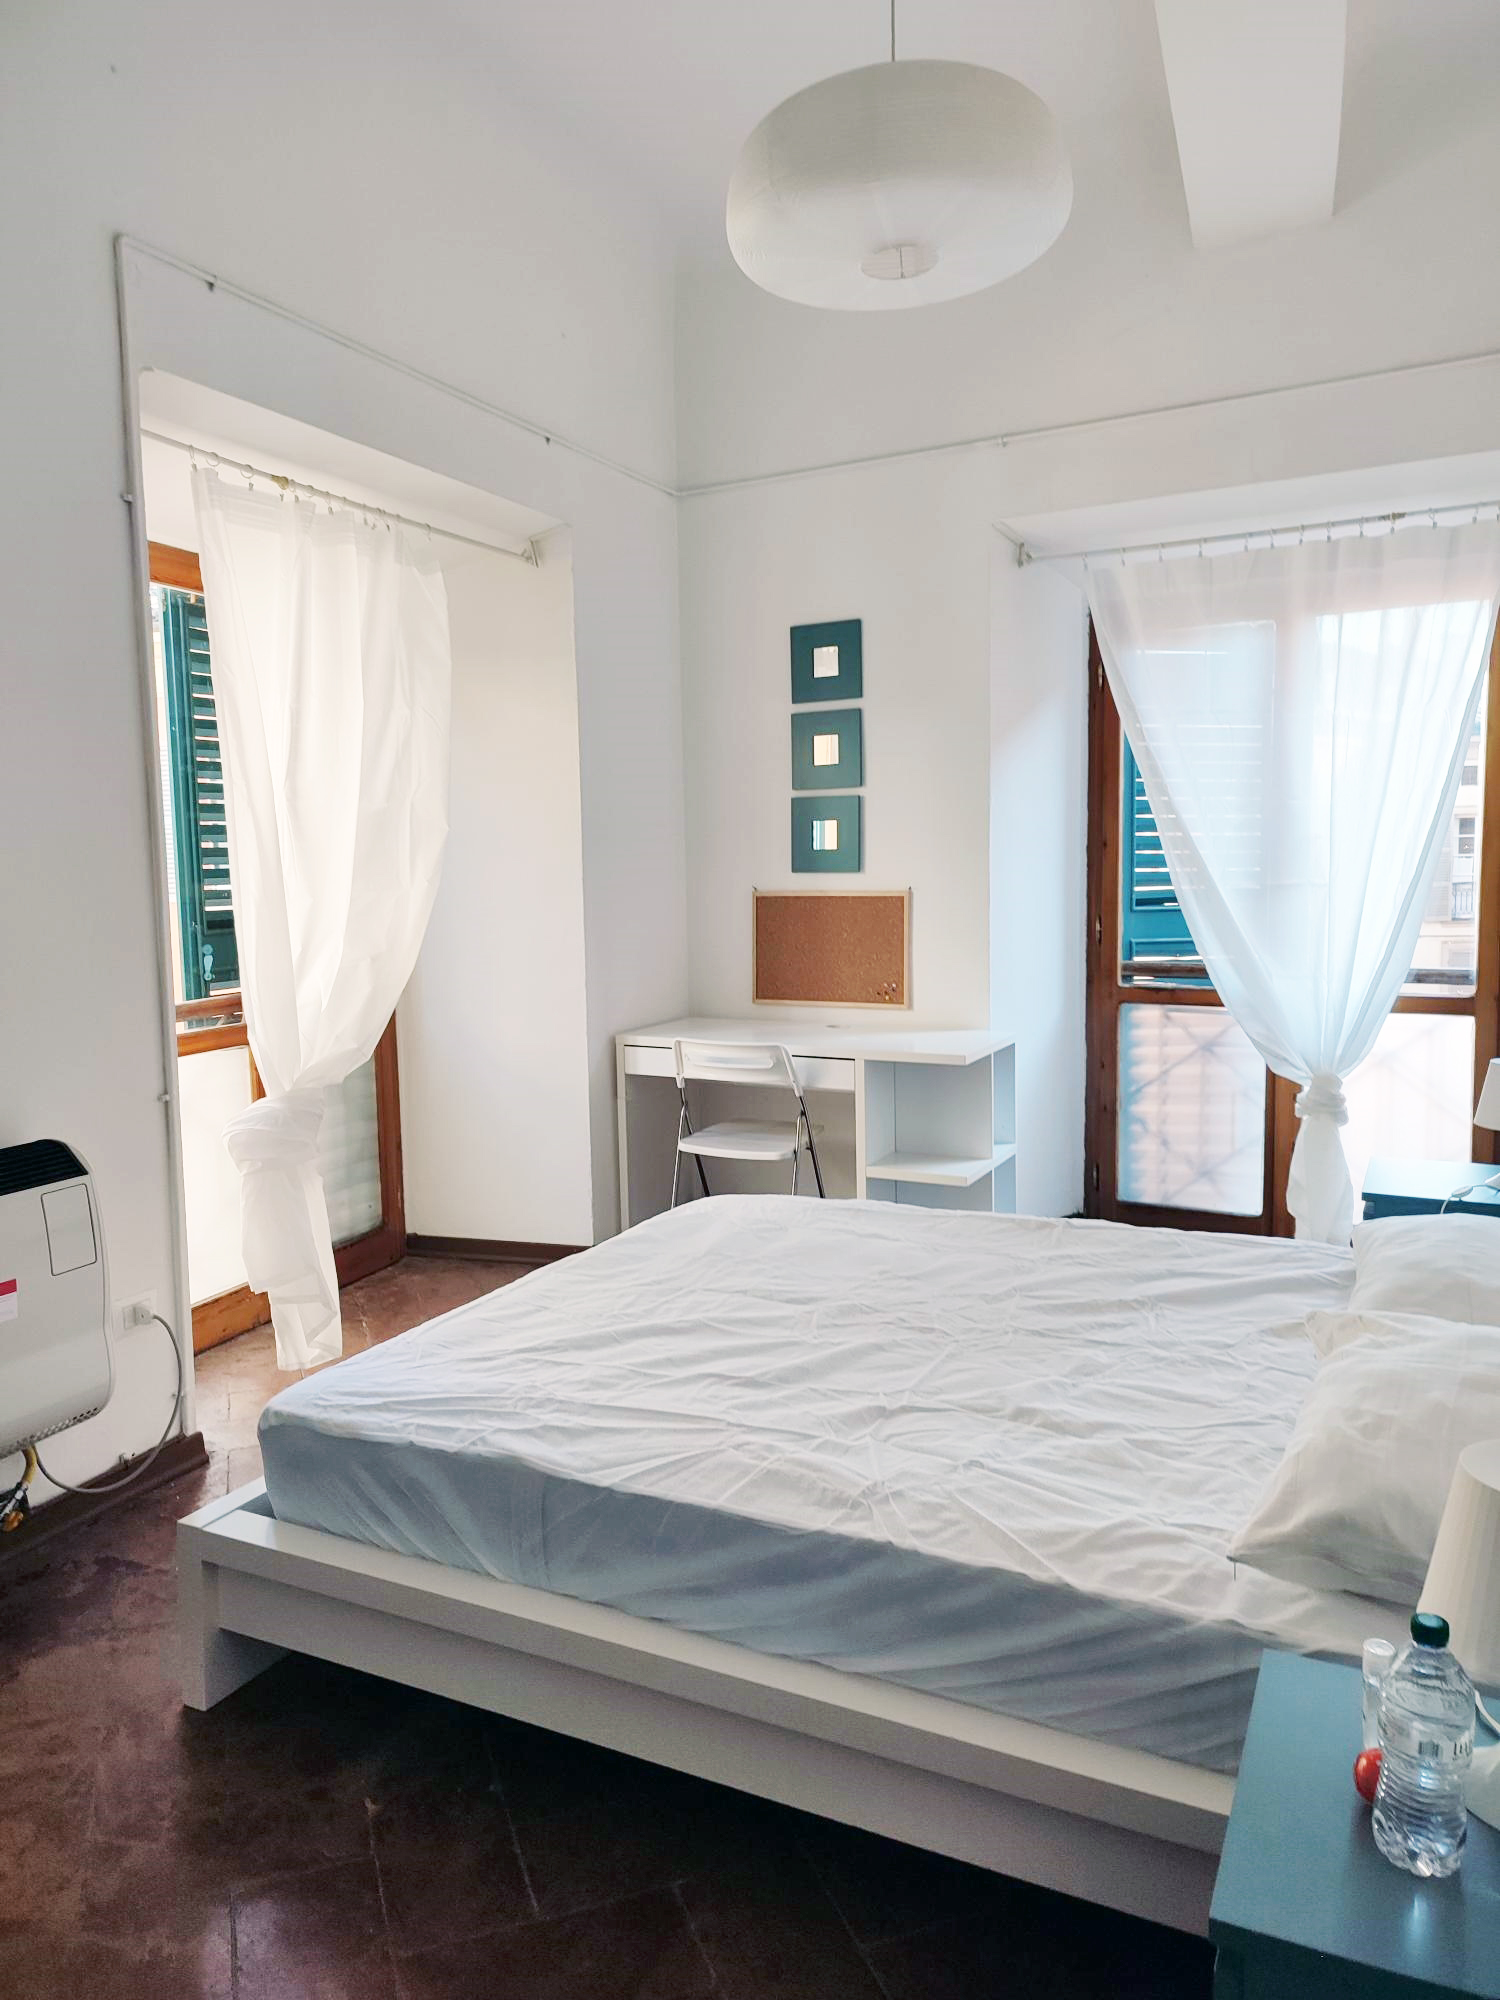 Bedroom in student apartment building in Reggio Emilia, Italy.